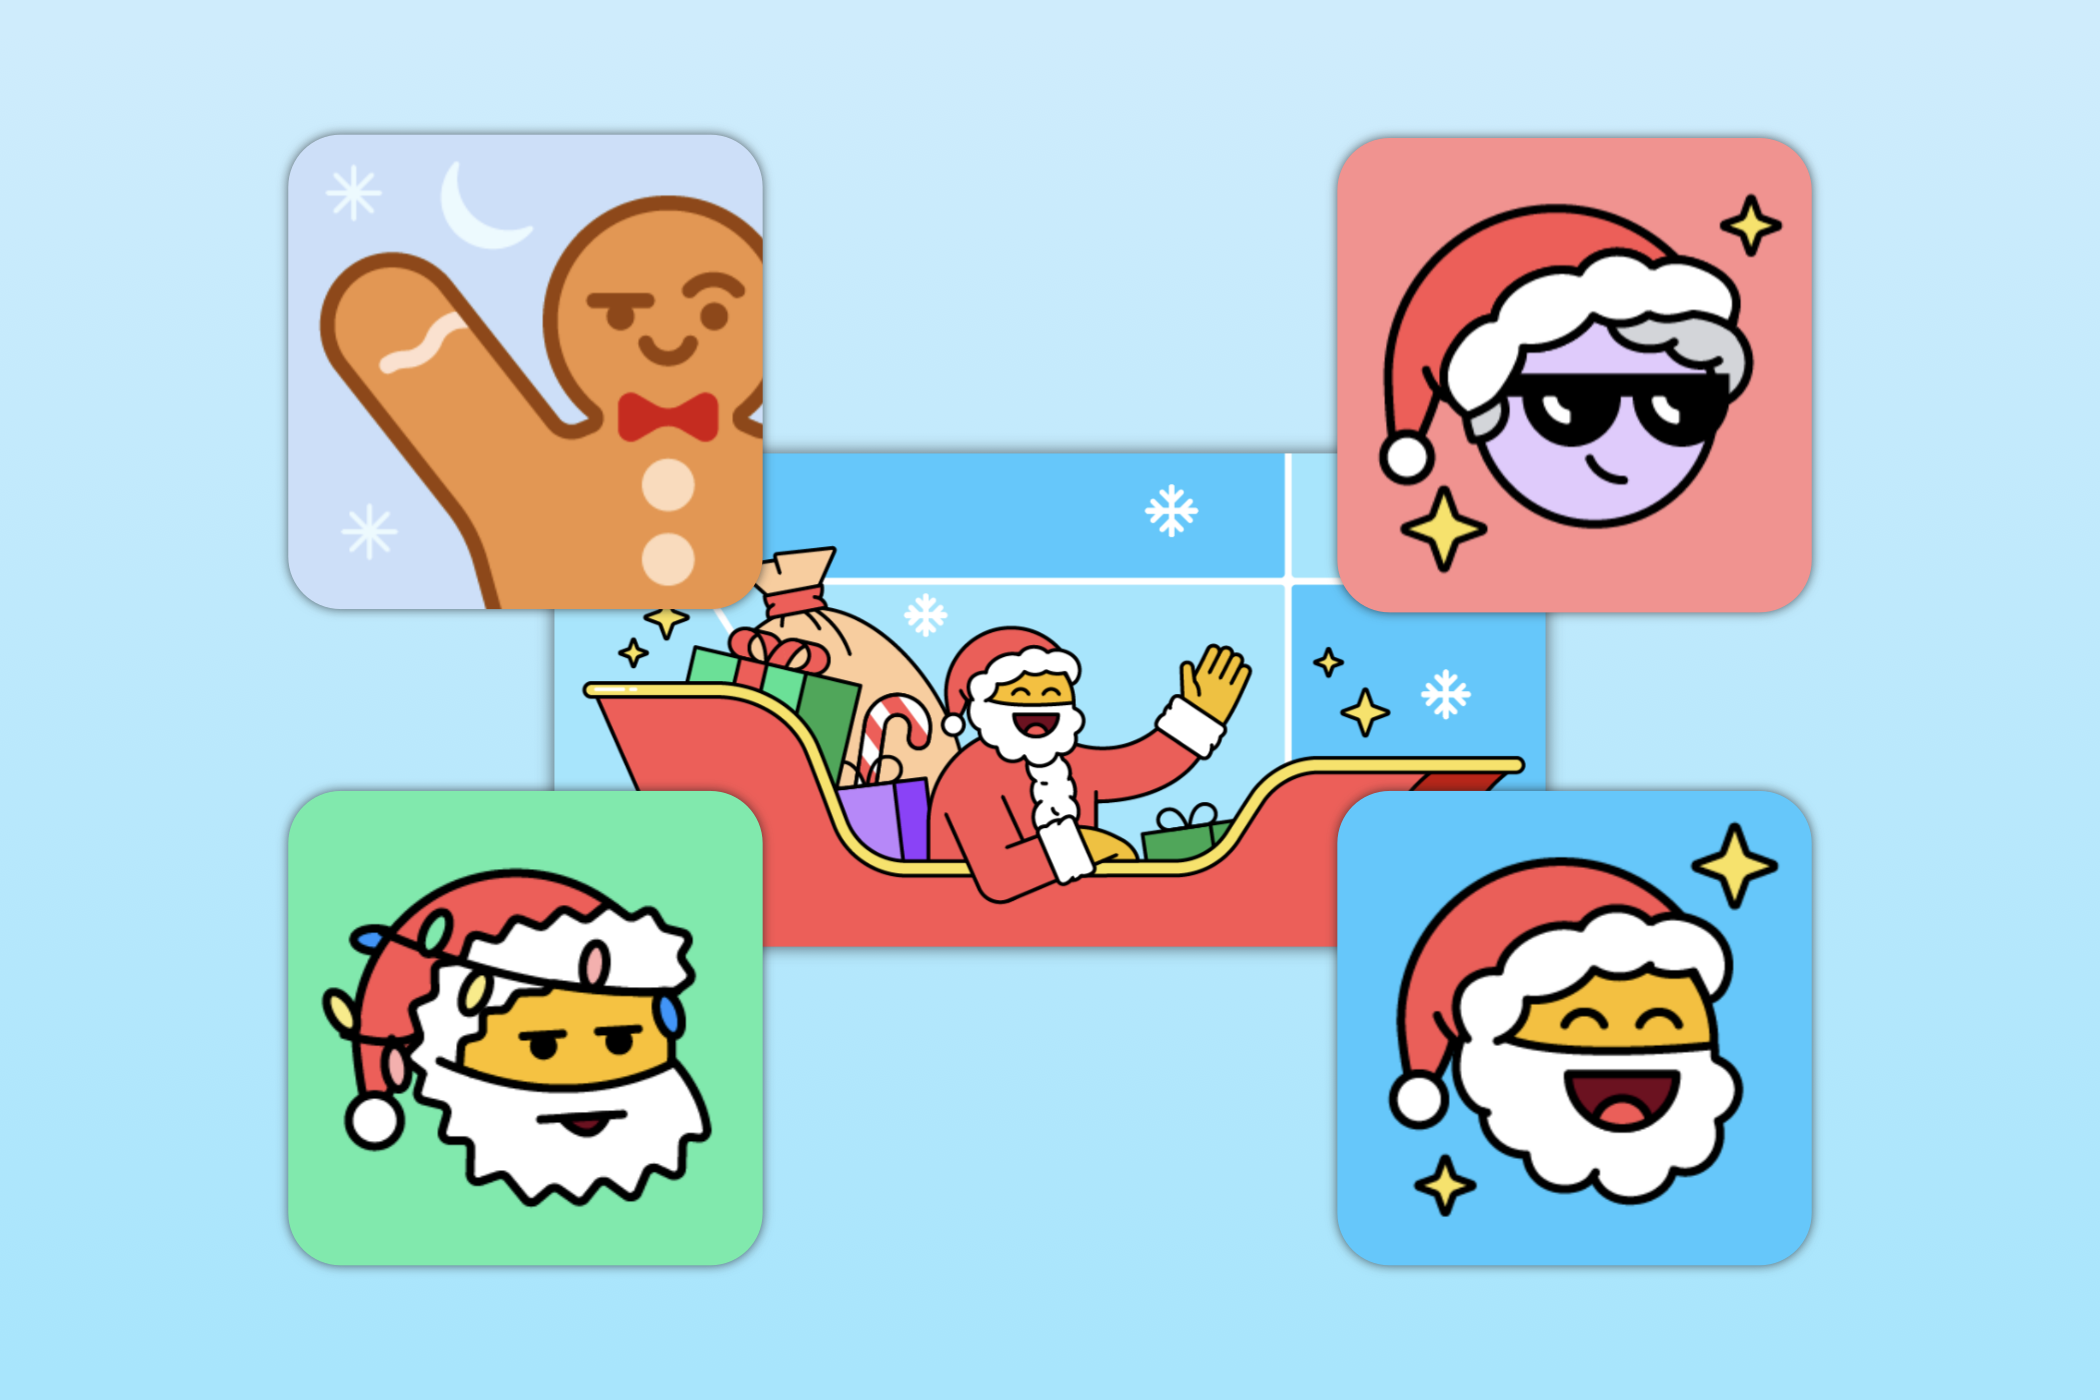 Waze holiday icons.